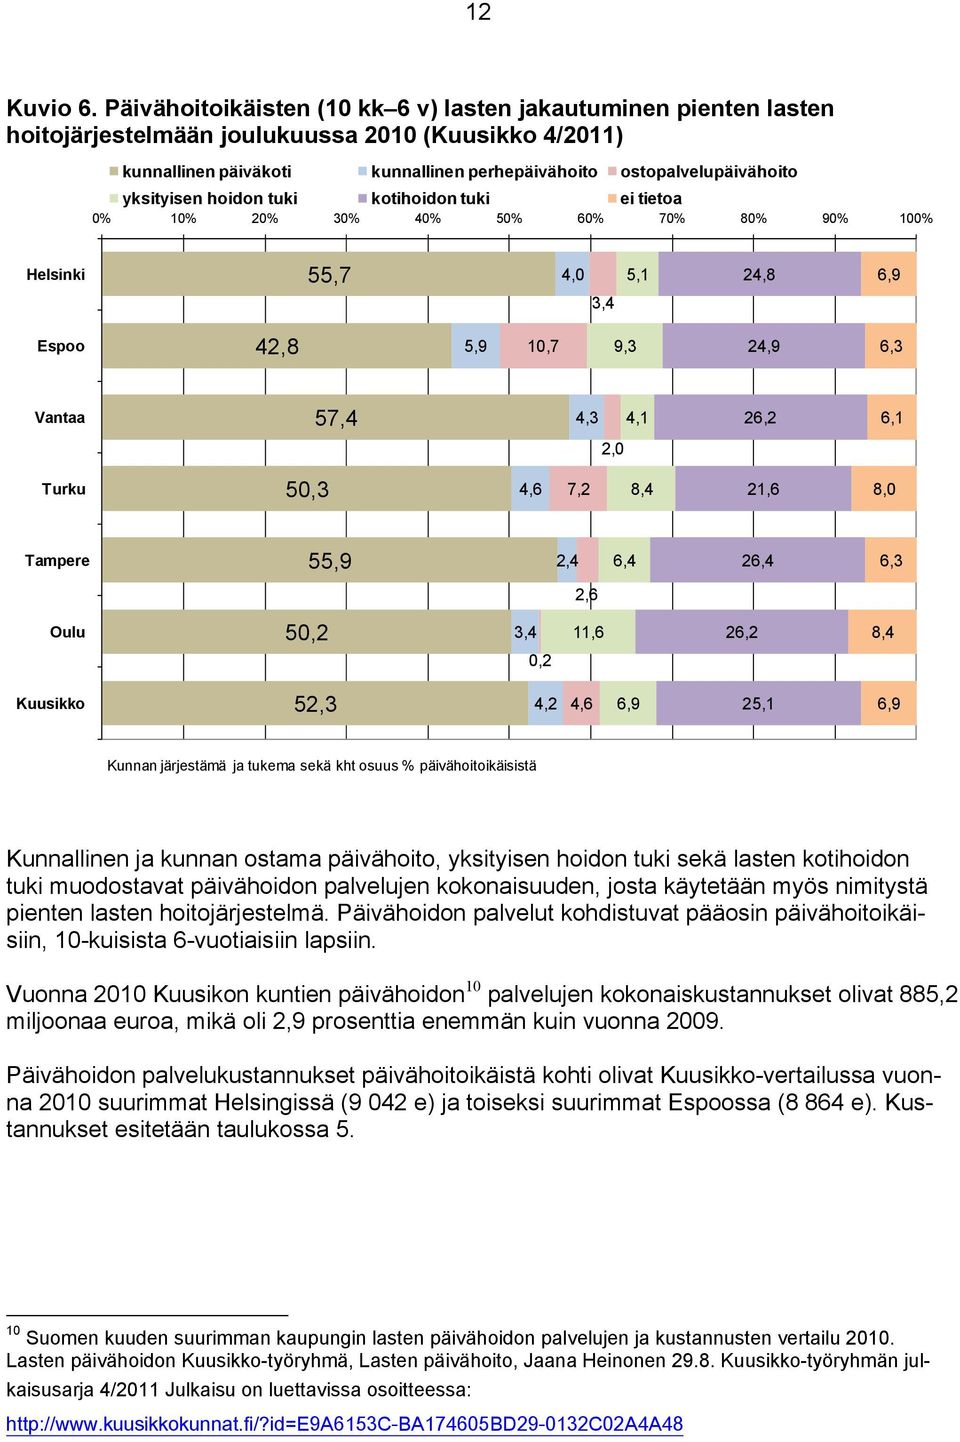 yksityisen hoidon tuki kotihoidon tuki ei tietoa 0% 10% 20% 30% 40% 50% 60% 70% 80% 90% 100% Helsinki 55,7 4,0 3,4 5,1 24,8 6,9 Espoo 42,8 5,9 10,7 9,3 24,9 6,3 Vantaa 57,4 4,3 4,1 26,2 6,1 2,0 Turku